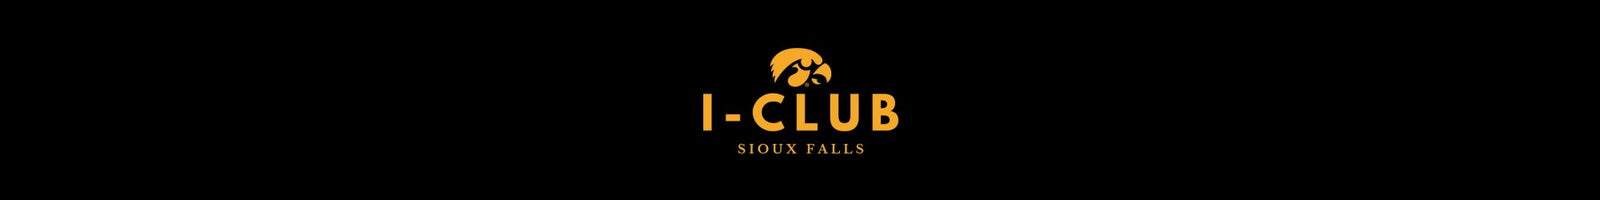 Sioux Falls I-Club